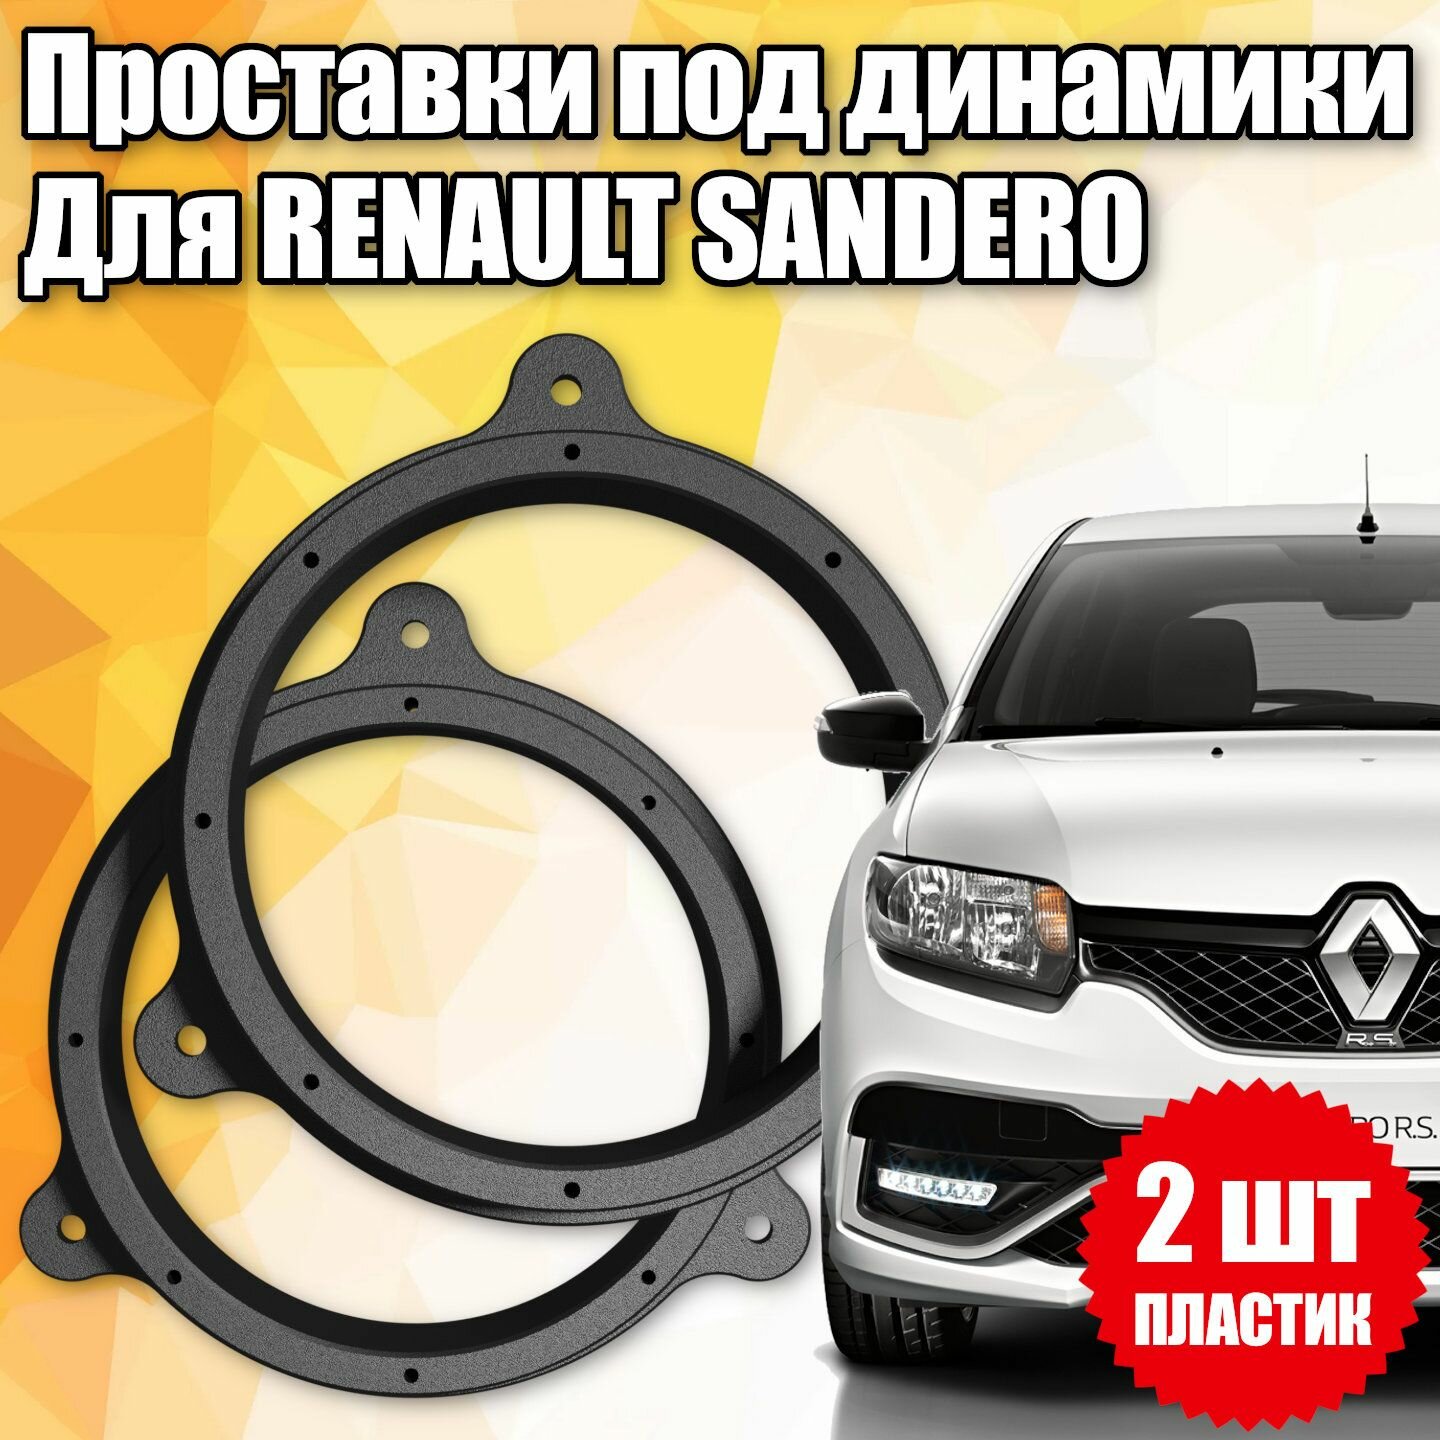 Проставки под динамики 16 см для Renault Sandero